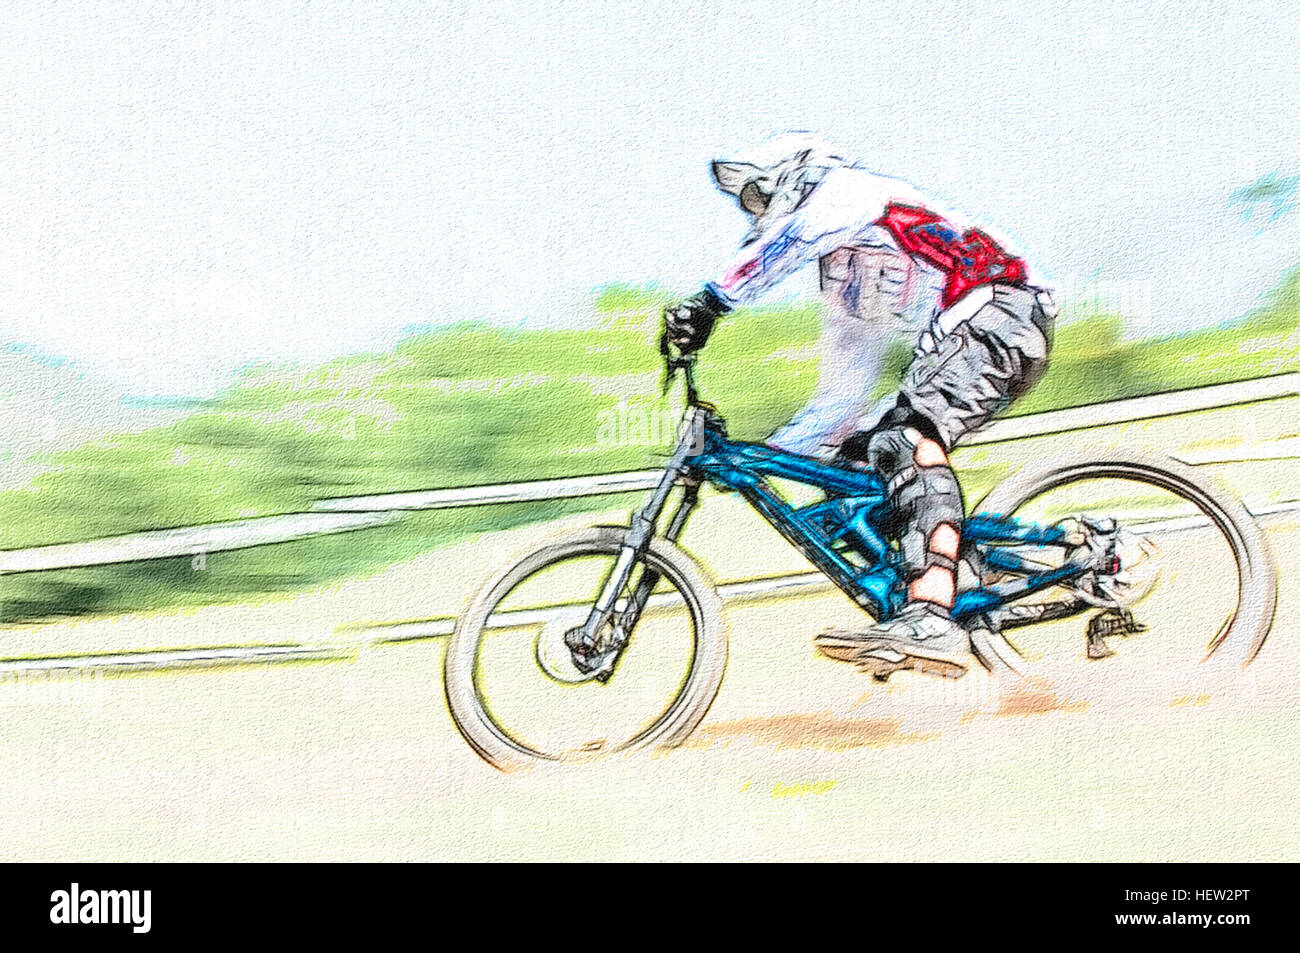 Downhill Biker im Wettbewerb Zeichenstil Stockfoto